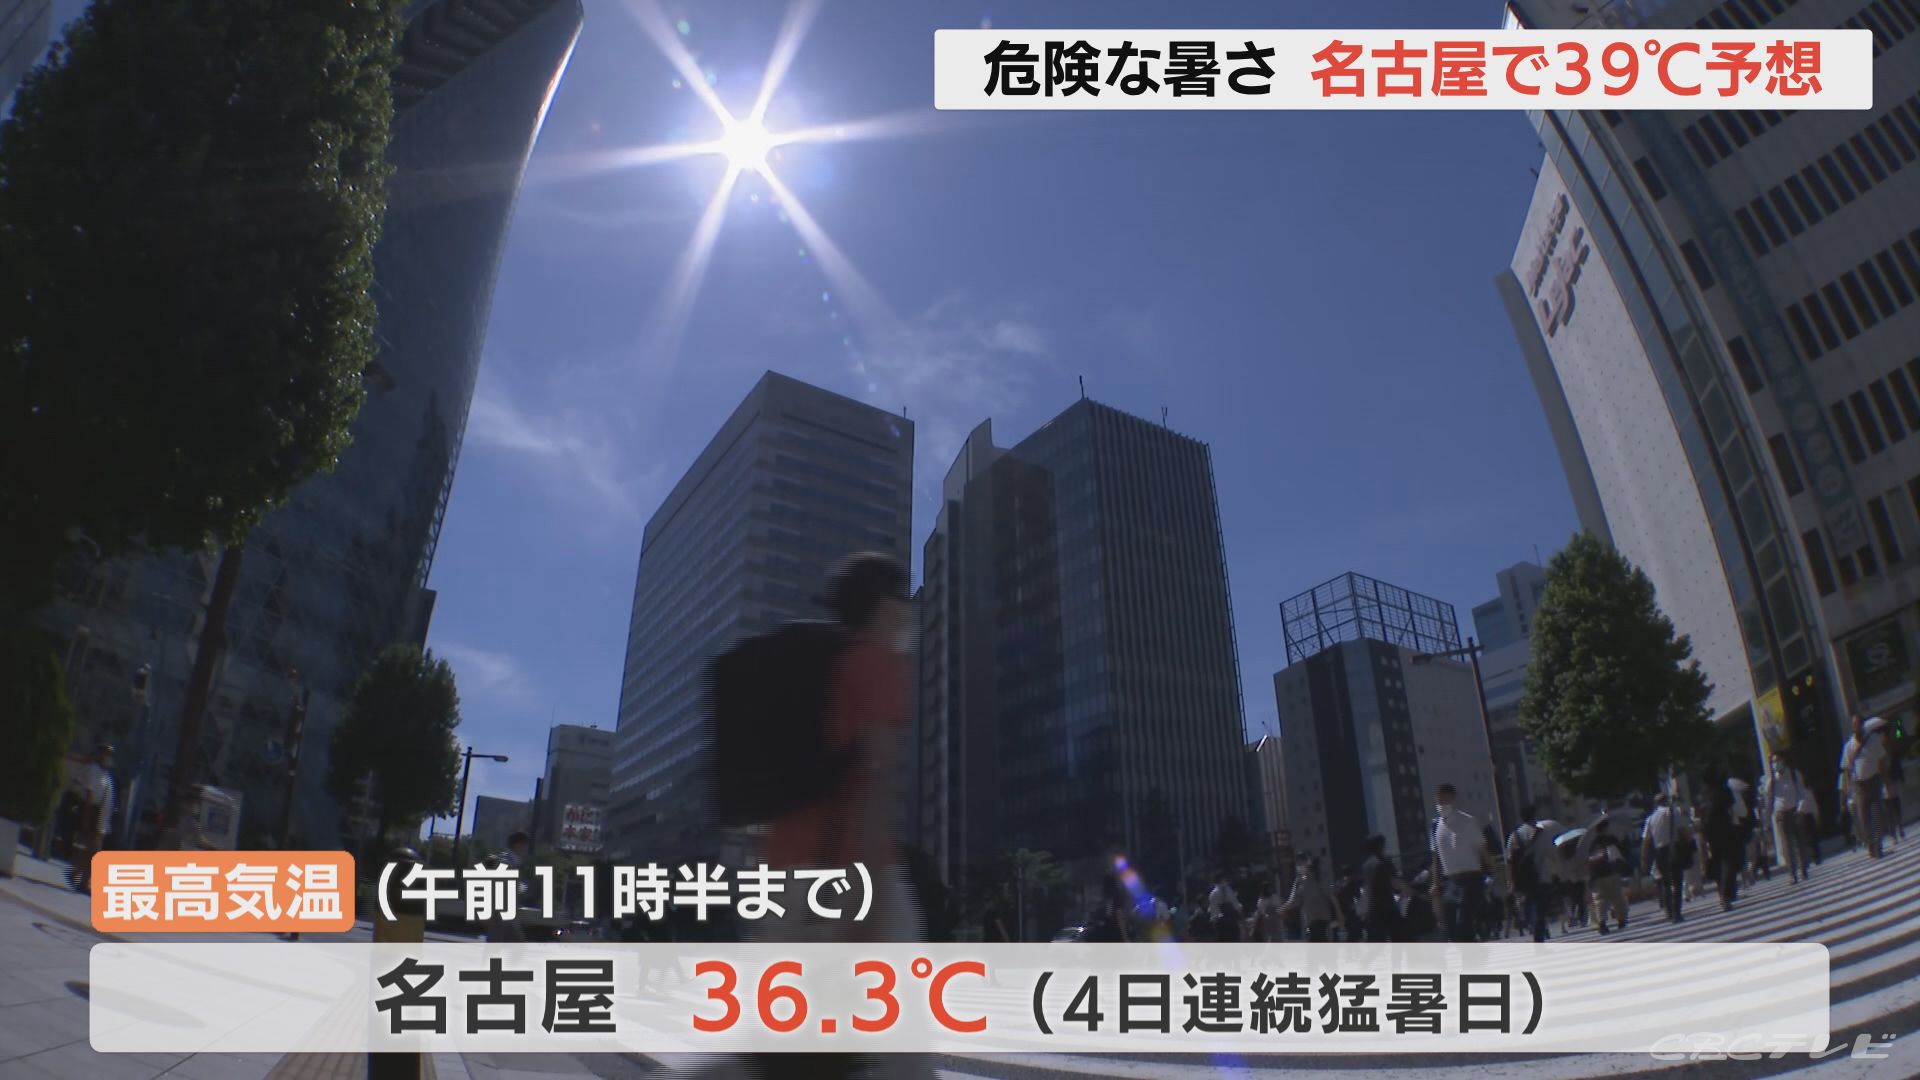 予想最高気温名古屋39度 愛知県と三重県に「熱中症警戒アラート」こまめな水分補給 適切な冷房を